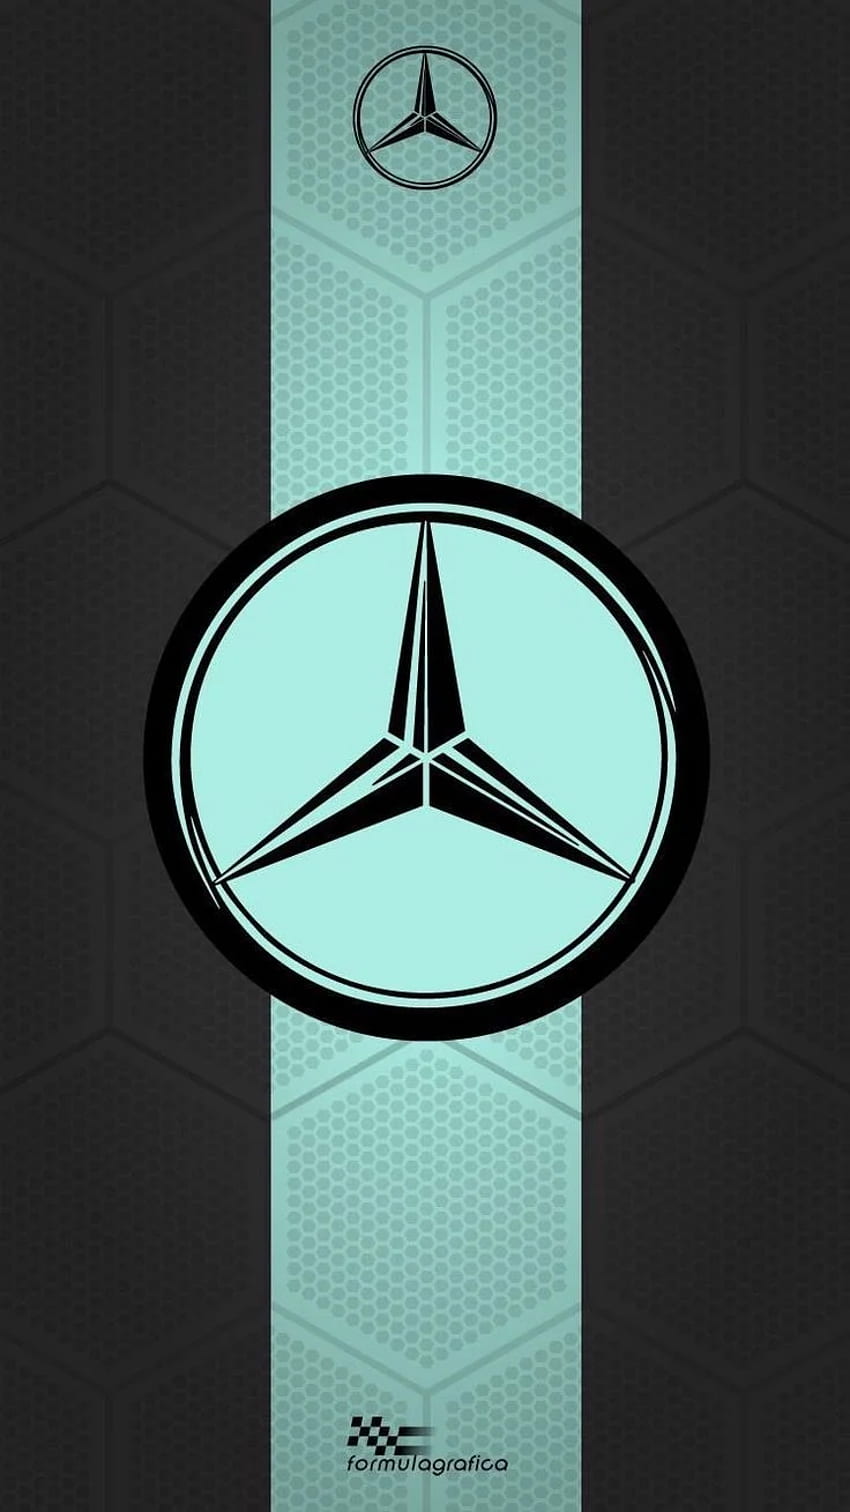 Lịch sử hãng ô tô Mercedes-Benz